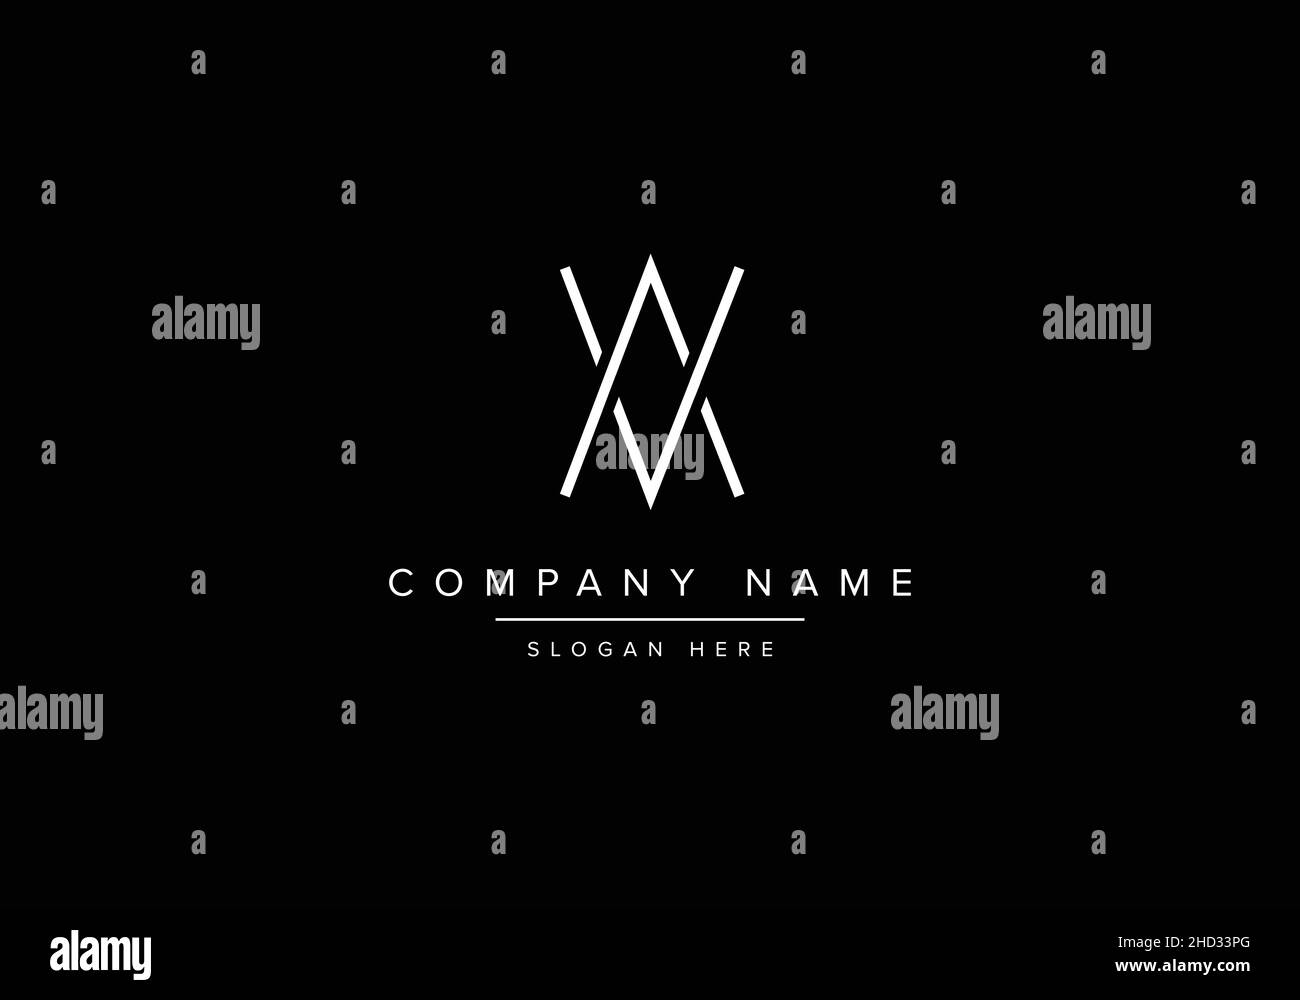 Alphabet letter VA AV monogram logo Stock Vector